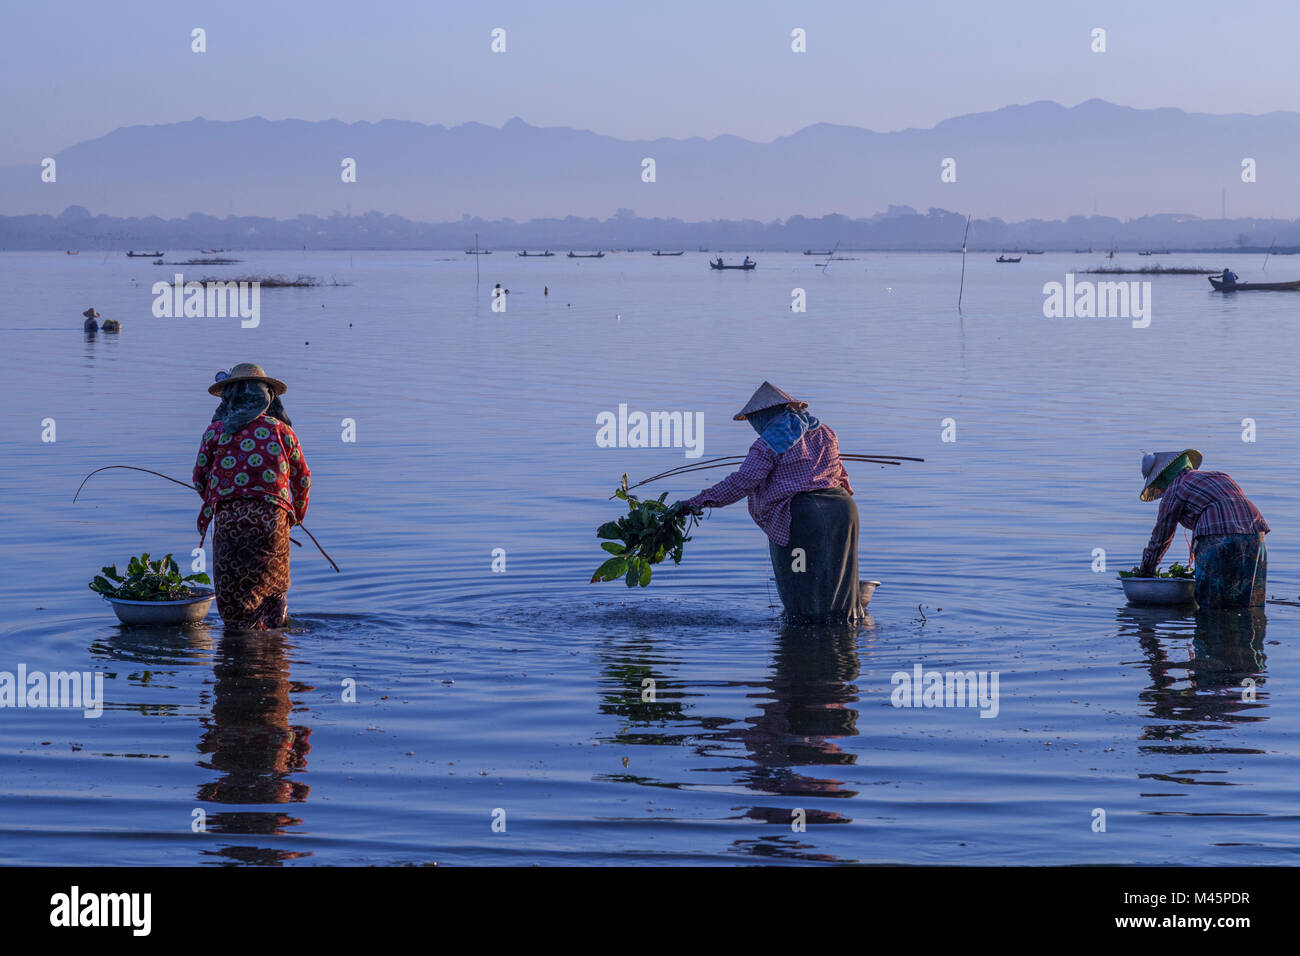 Amanecer sobre el lago con pescadoras pescando en el lago cerca del puente de madera U Bein Puente que cruza el lago Taungthaman cerca de Amarapura en manda Foto de stock